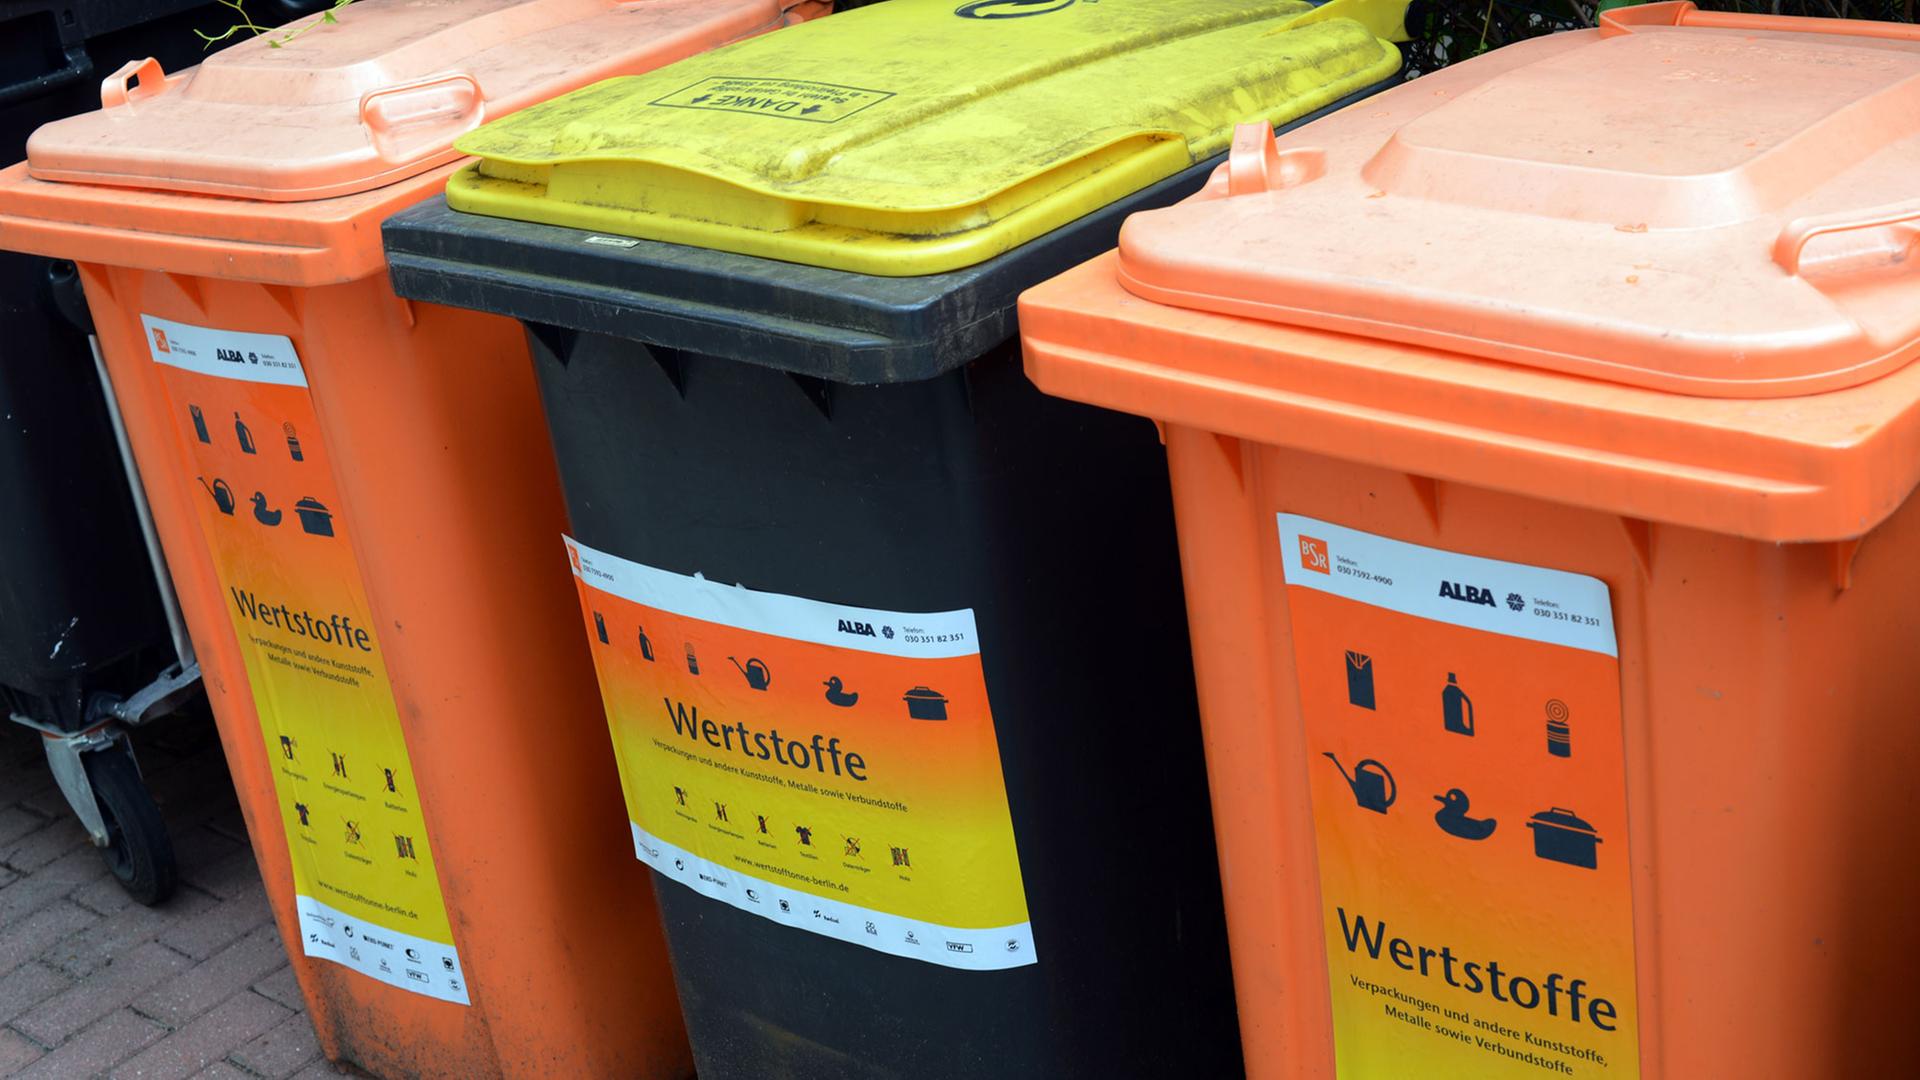 Ehemalige Sammeltonnen "Orange Box" der BSR und "Gelbe Tonne" von Alba sind als einheitliche Wertstofftonnen am 12.08.2013 in Berlin Karlshorst gekennzeichnet. In der Wertstofftonne werden Kunststoffe, Metall und Verbundmaterialien gesammelt. Foto: Jens Kalaene/dpa